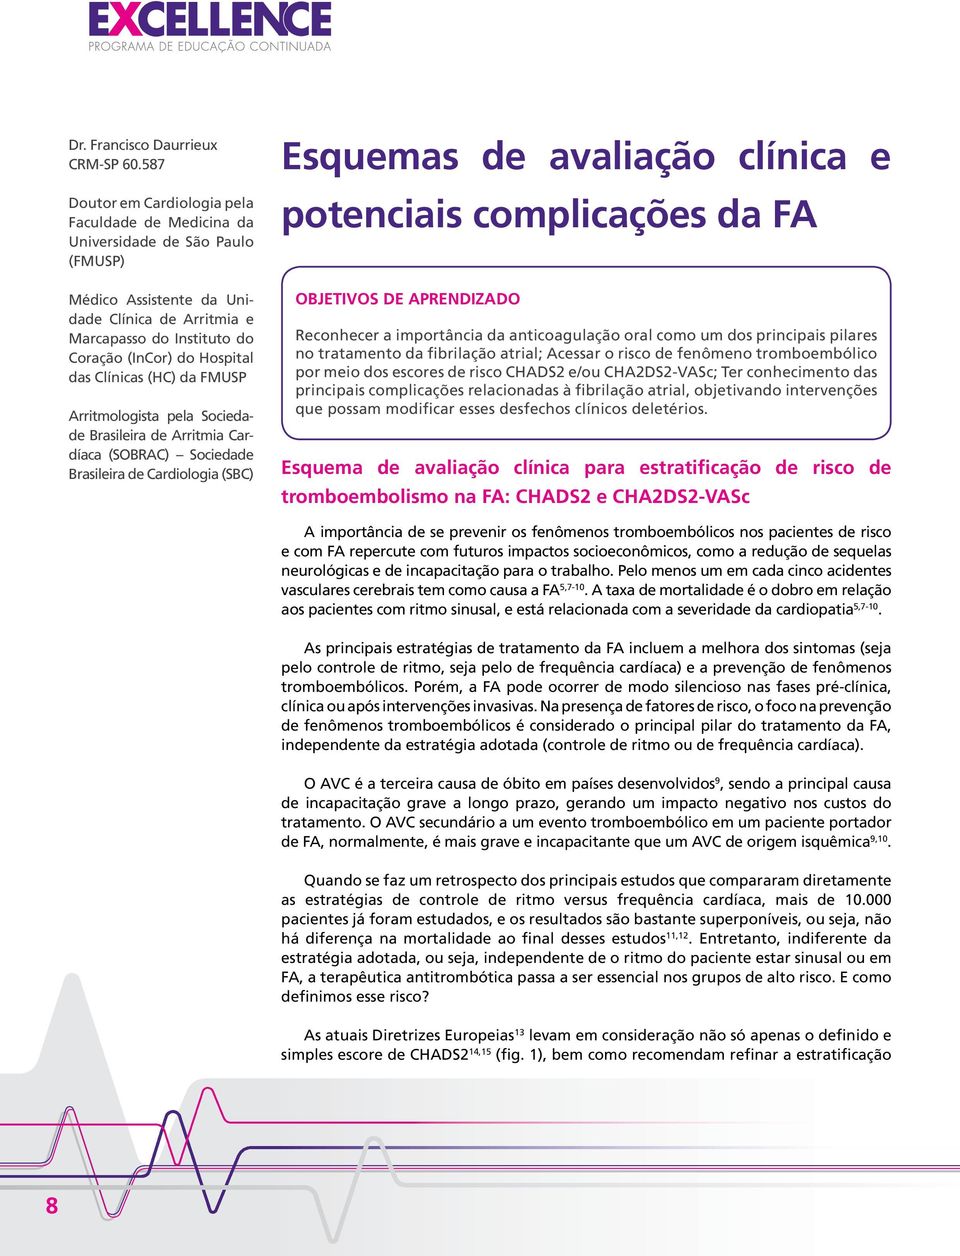 Clínicas (HC) da FMUSP Arritmologista pela Sociedade Brasileira de Arritmia Cardíaca (SOBRAC) Sociedade Brasileira de Cardiologia (SBC) Esquemas de avaliação clínica e potenciais complicações da FA